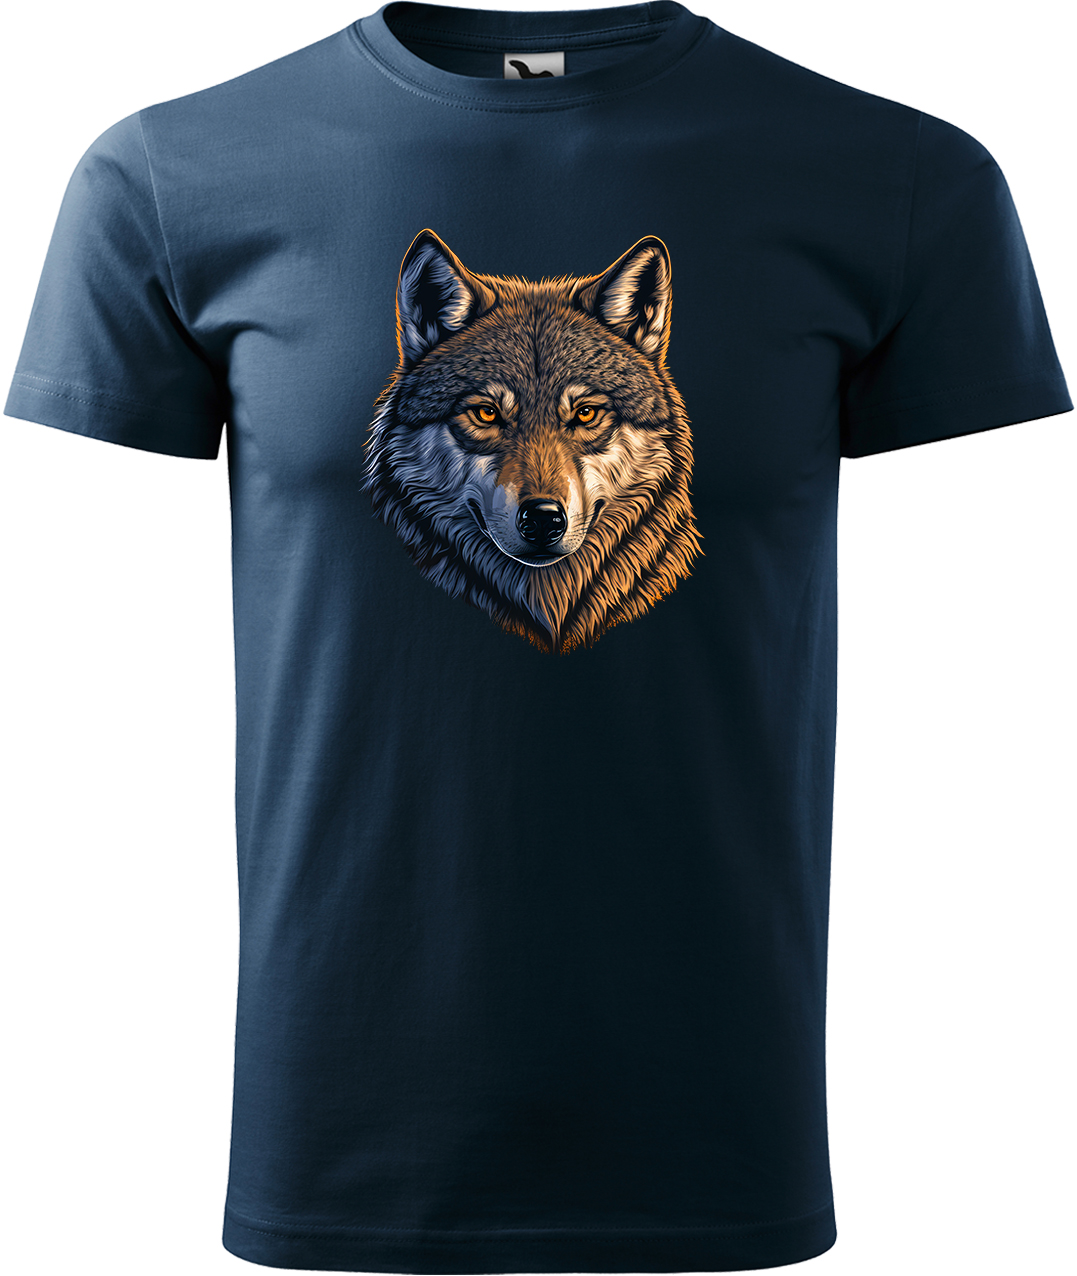 Pánské tričko s vlkem - Hlava vlka Velikost: S, Barva: Námořní modrá (02), Střih: pánský